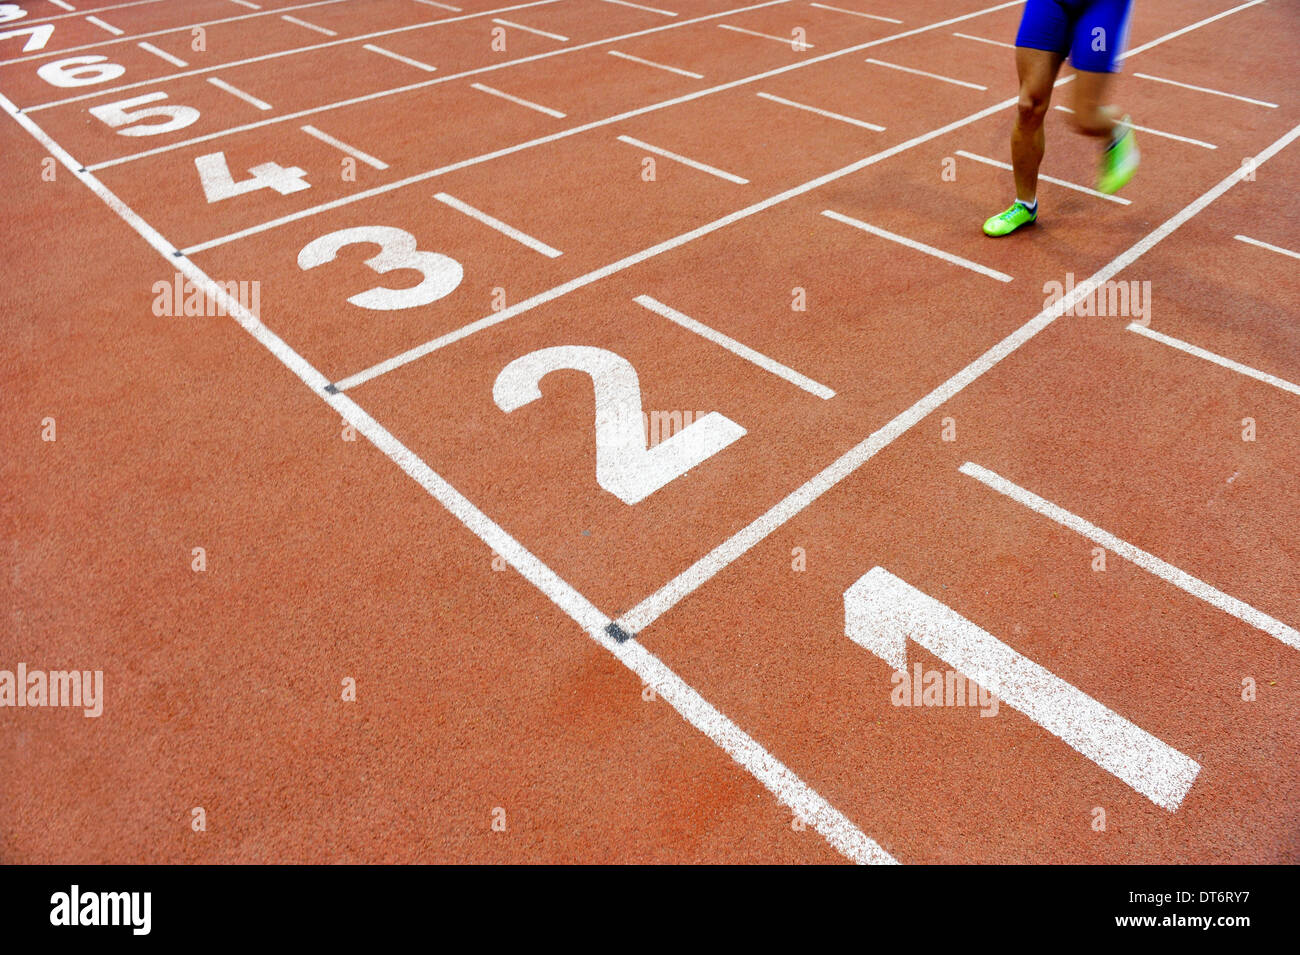 Verschwommene Athleten durch eine langsame Kamera Verschlusszeit über die Ziellinie nach Sprint track Stockfoto